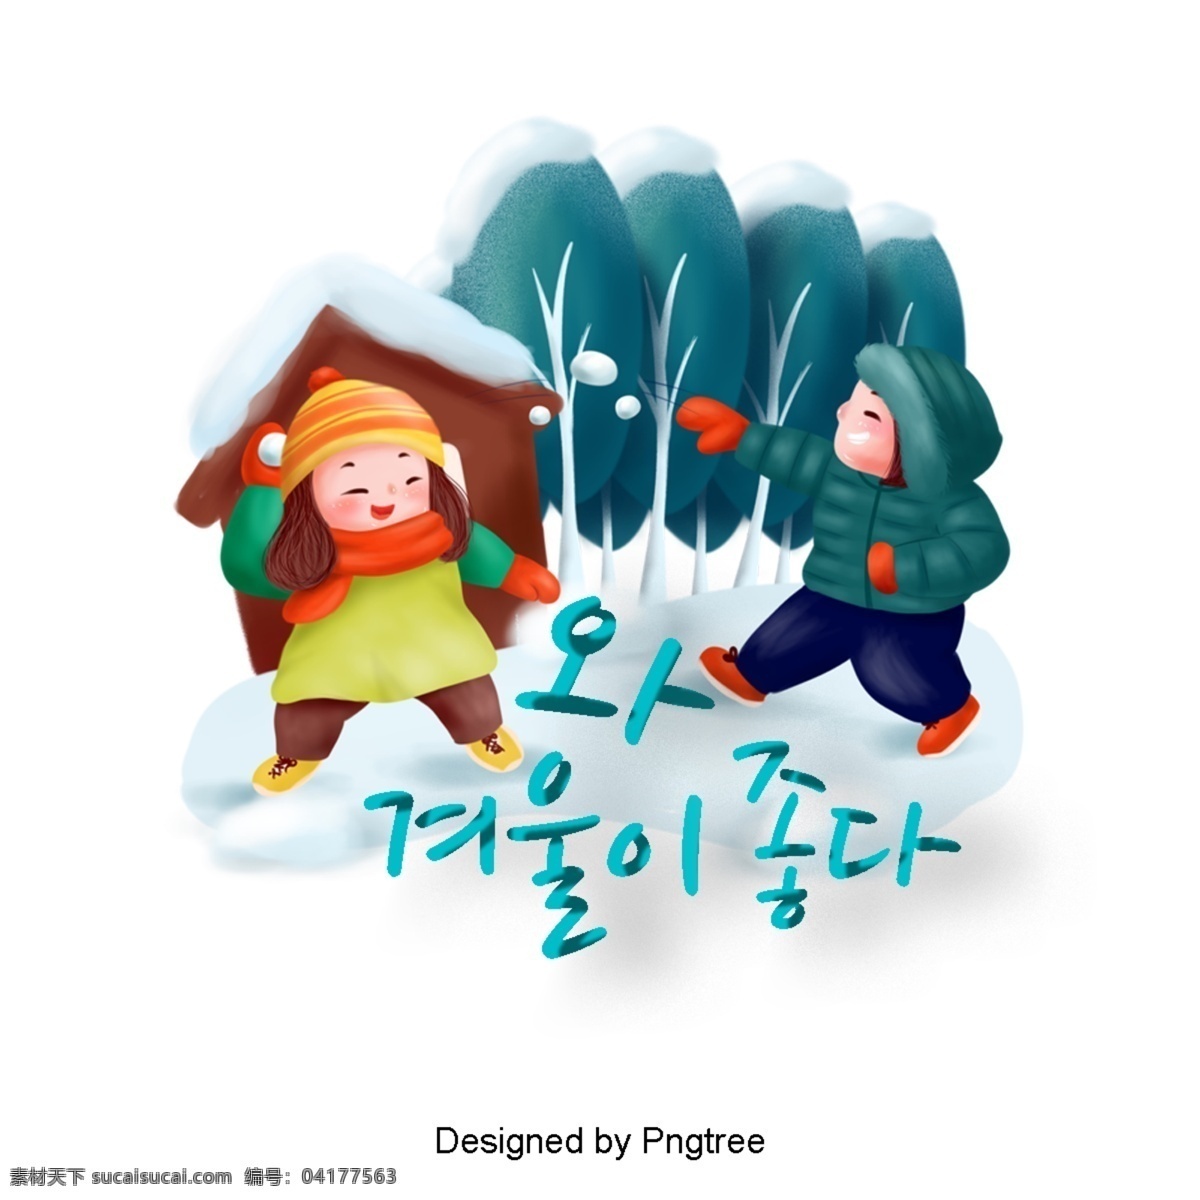 snowballing 冬天 动画片 例证 男孩 女孩 冬季 雪球 可爱 冷 雪 树 屋 快乐 韩国人物